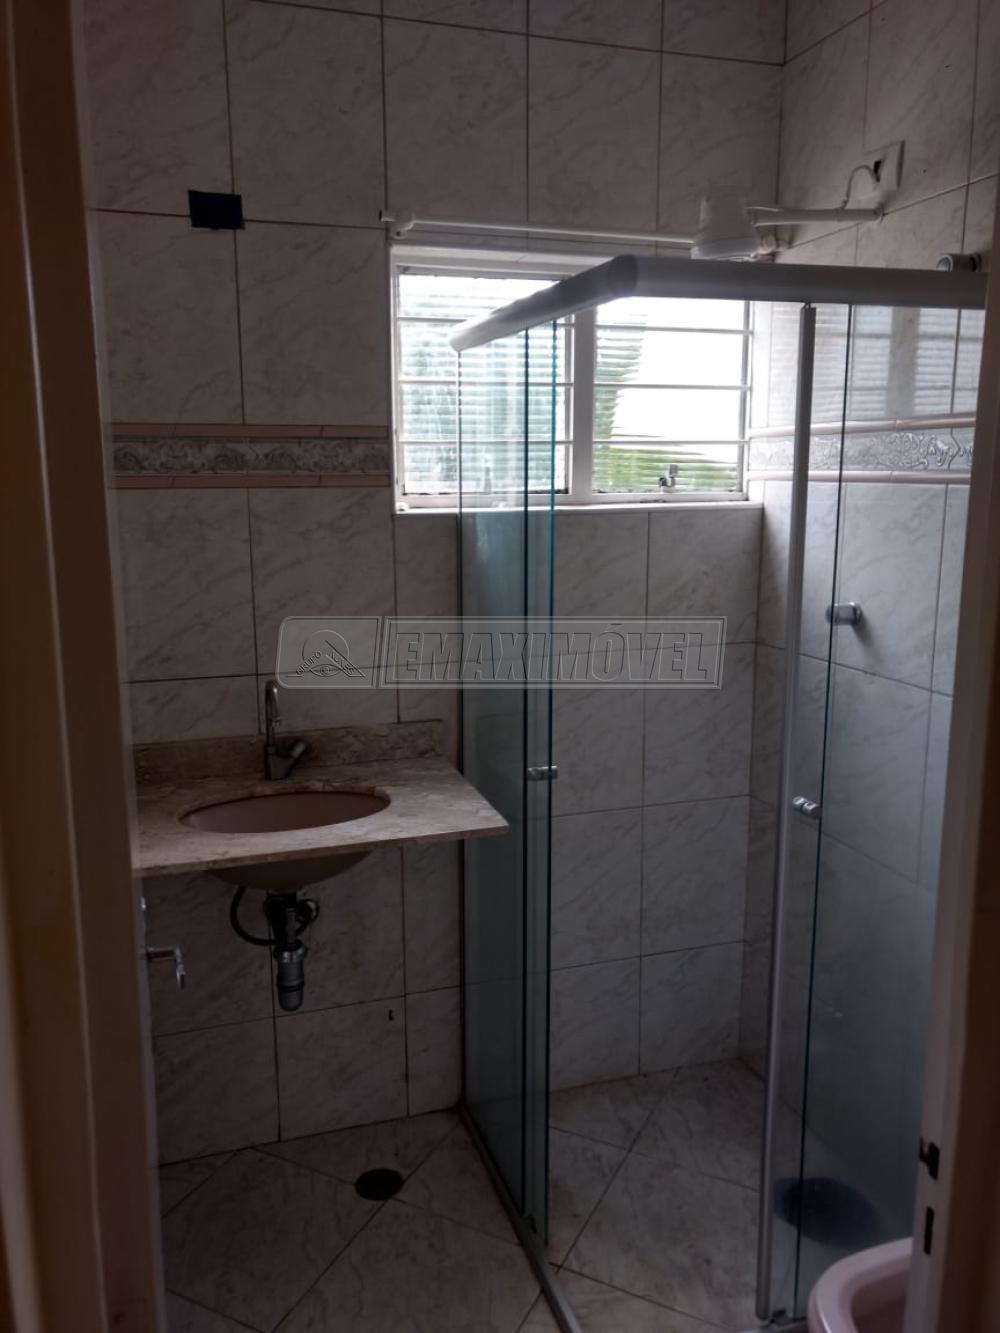 Comprar Apartamento / Padrão em Sorocaba R$ 220.000,00 - Foto 10